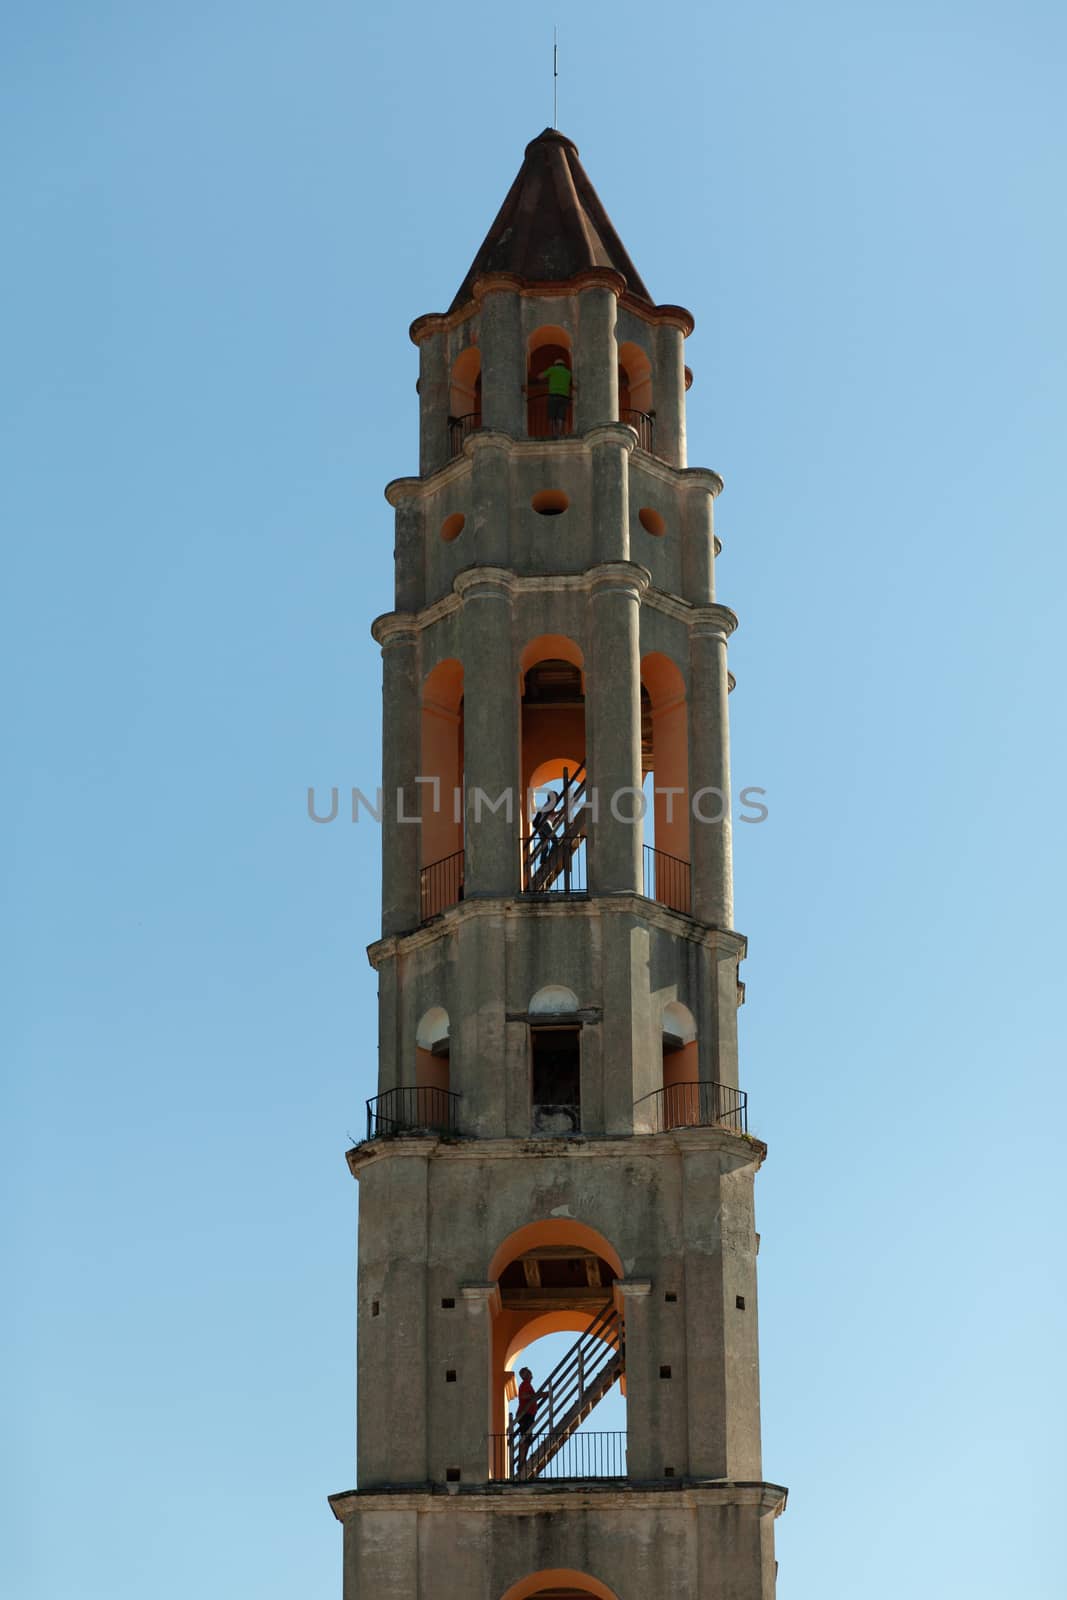 Trinidad, Cuba - 3 February 2015: Manaca Iznaga Tower